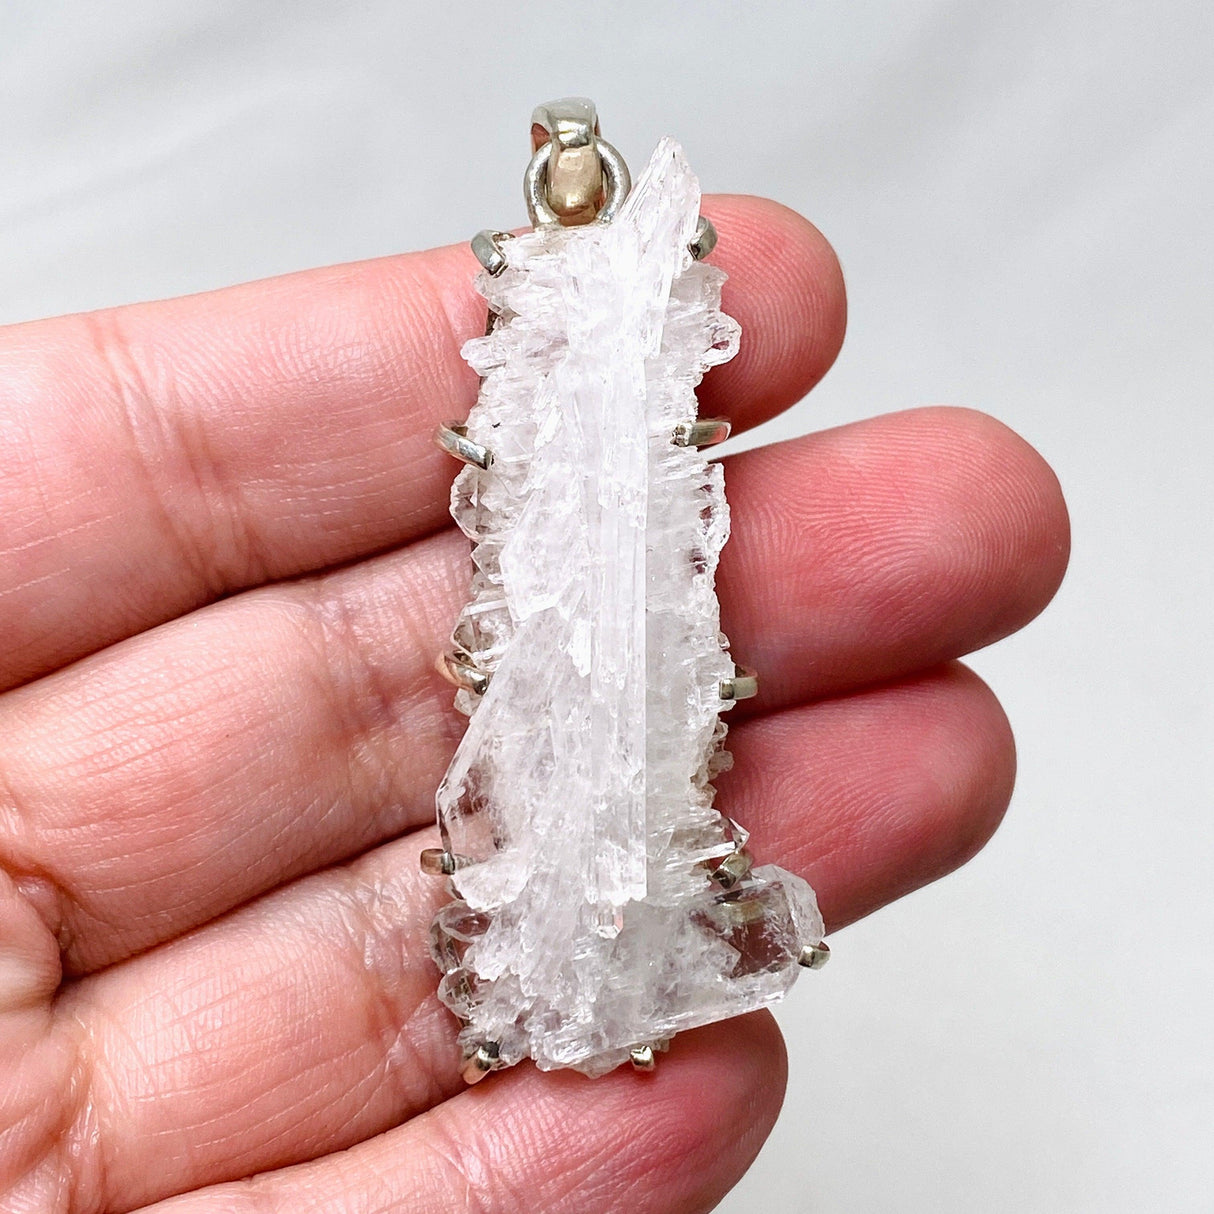 Faden Quartz Raw Crystal Pendant PPGJ716 - Nature's Magick